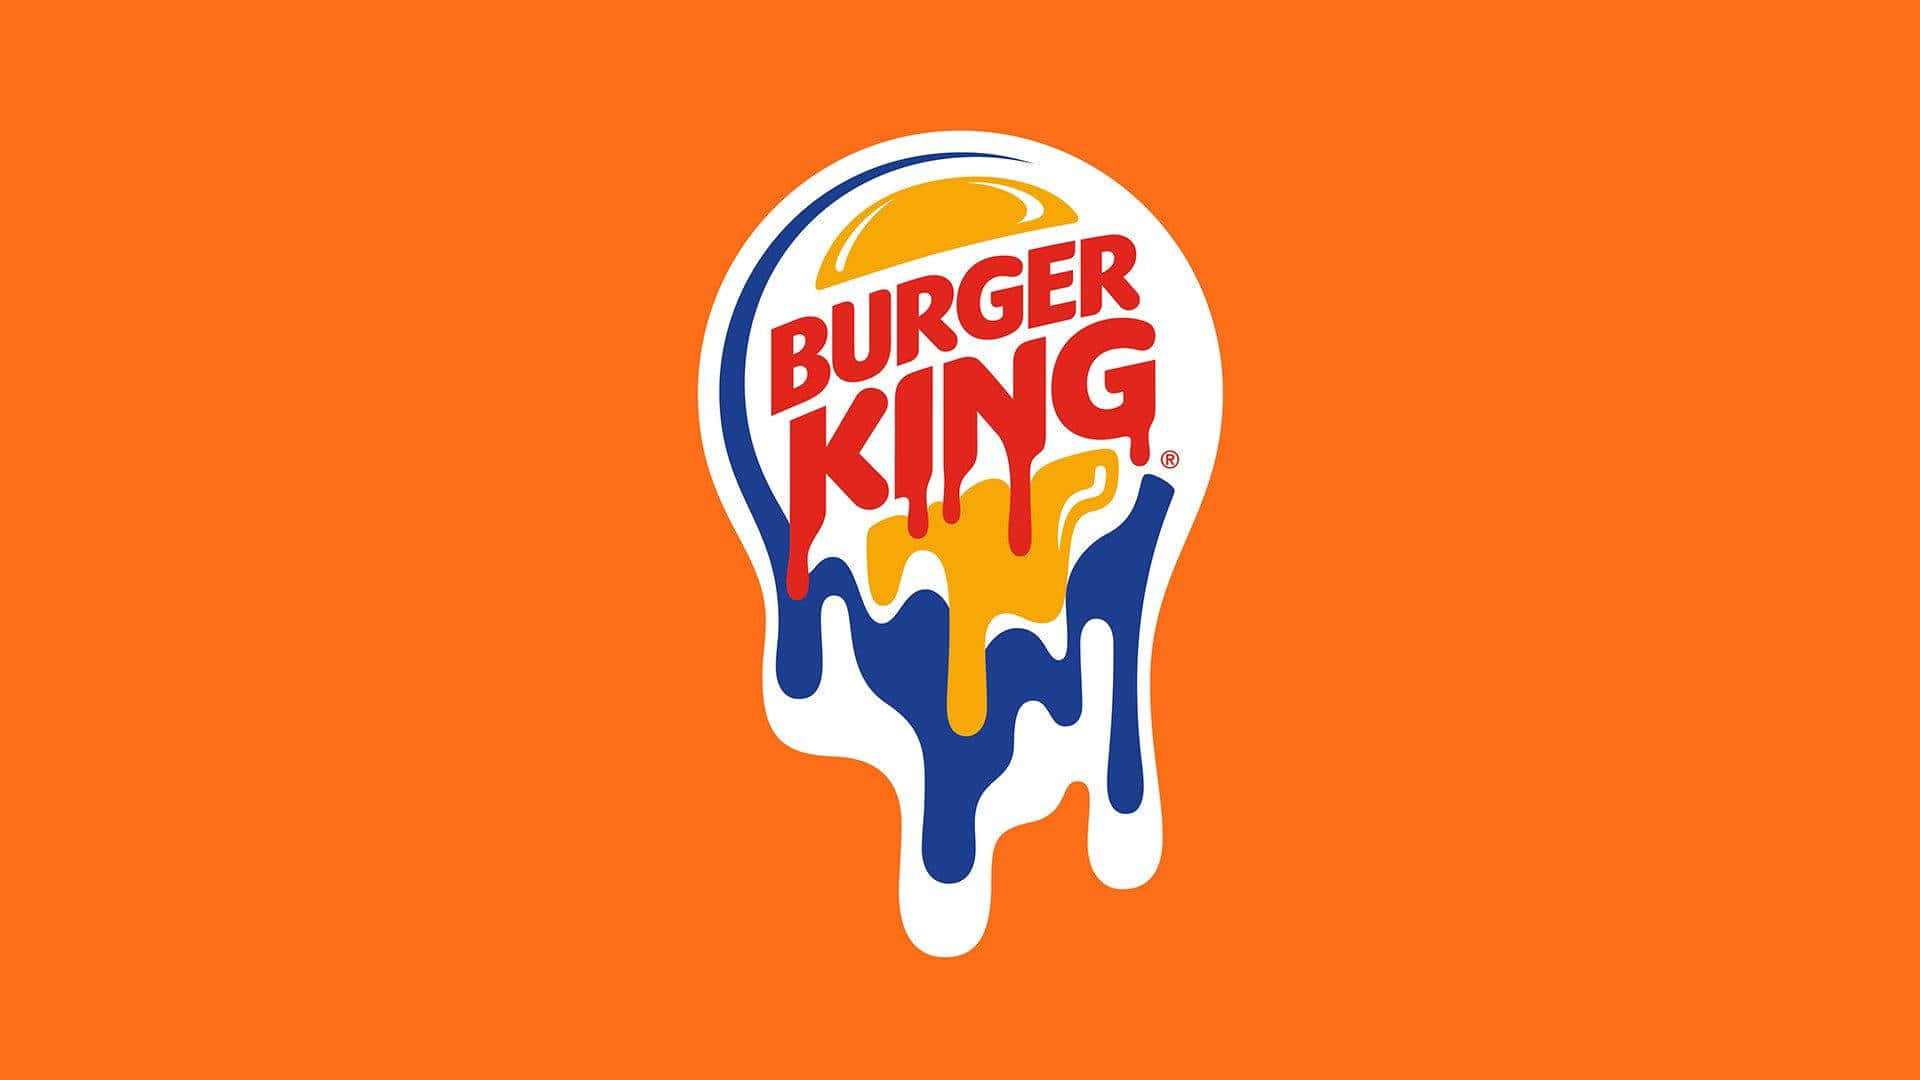 Burgerking-logo På En Orange Baggrund.